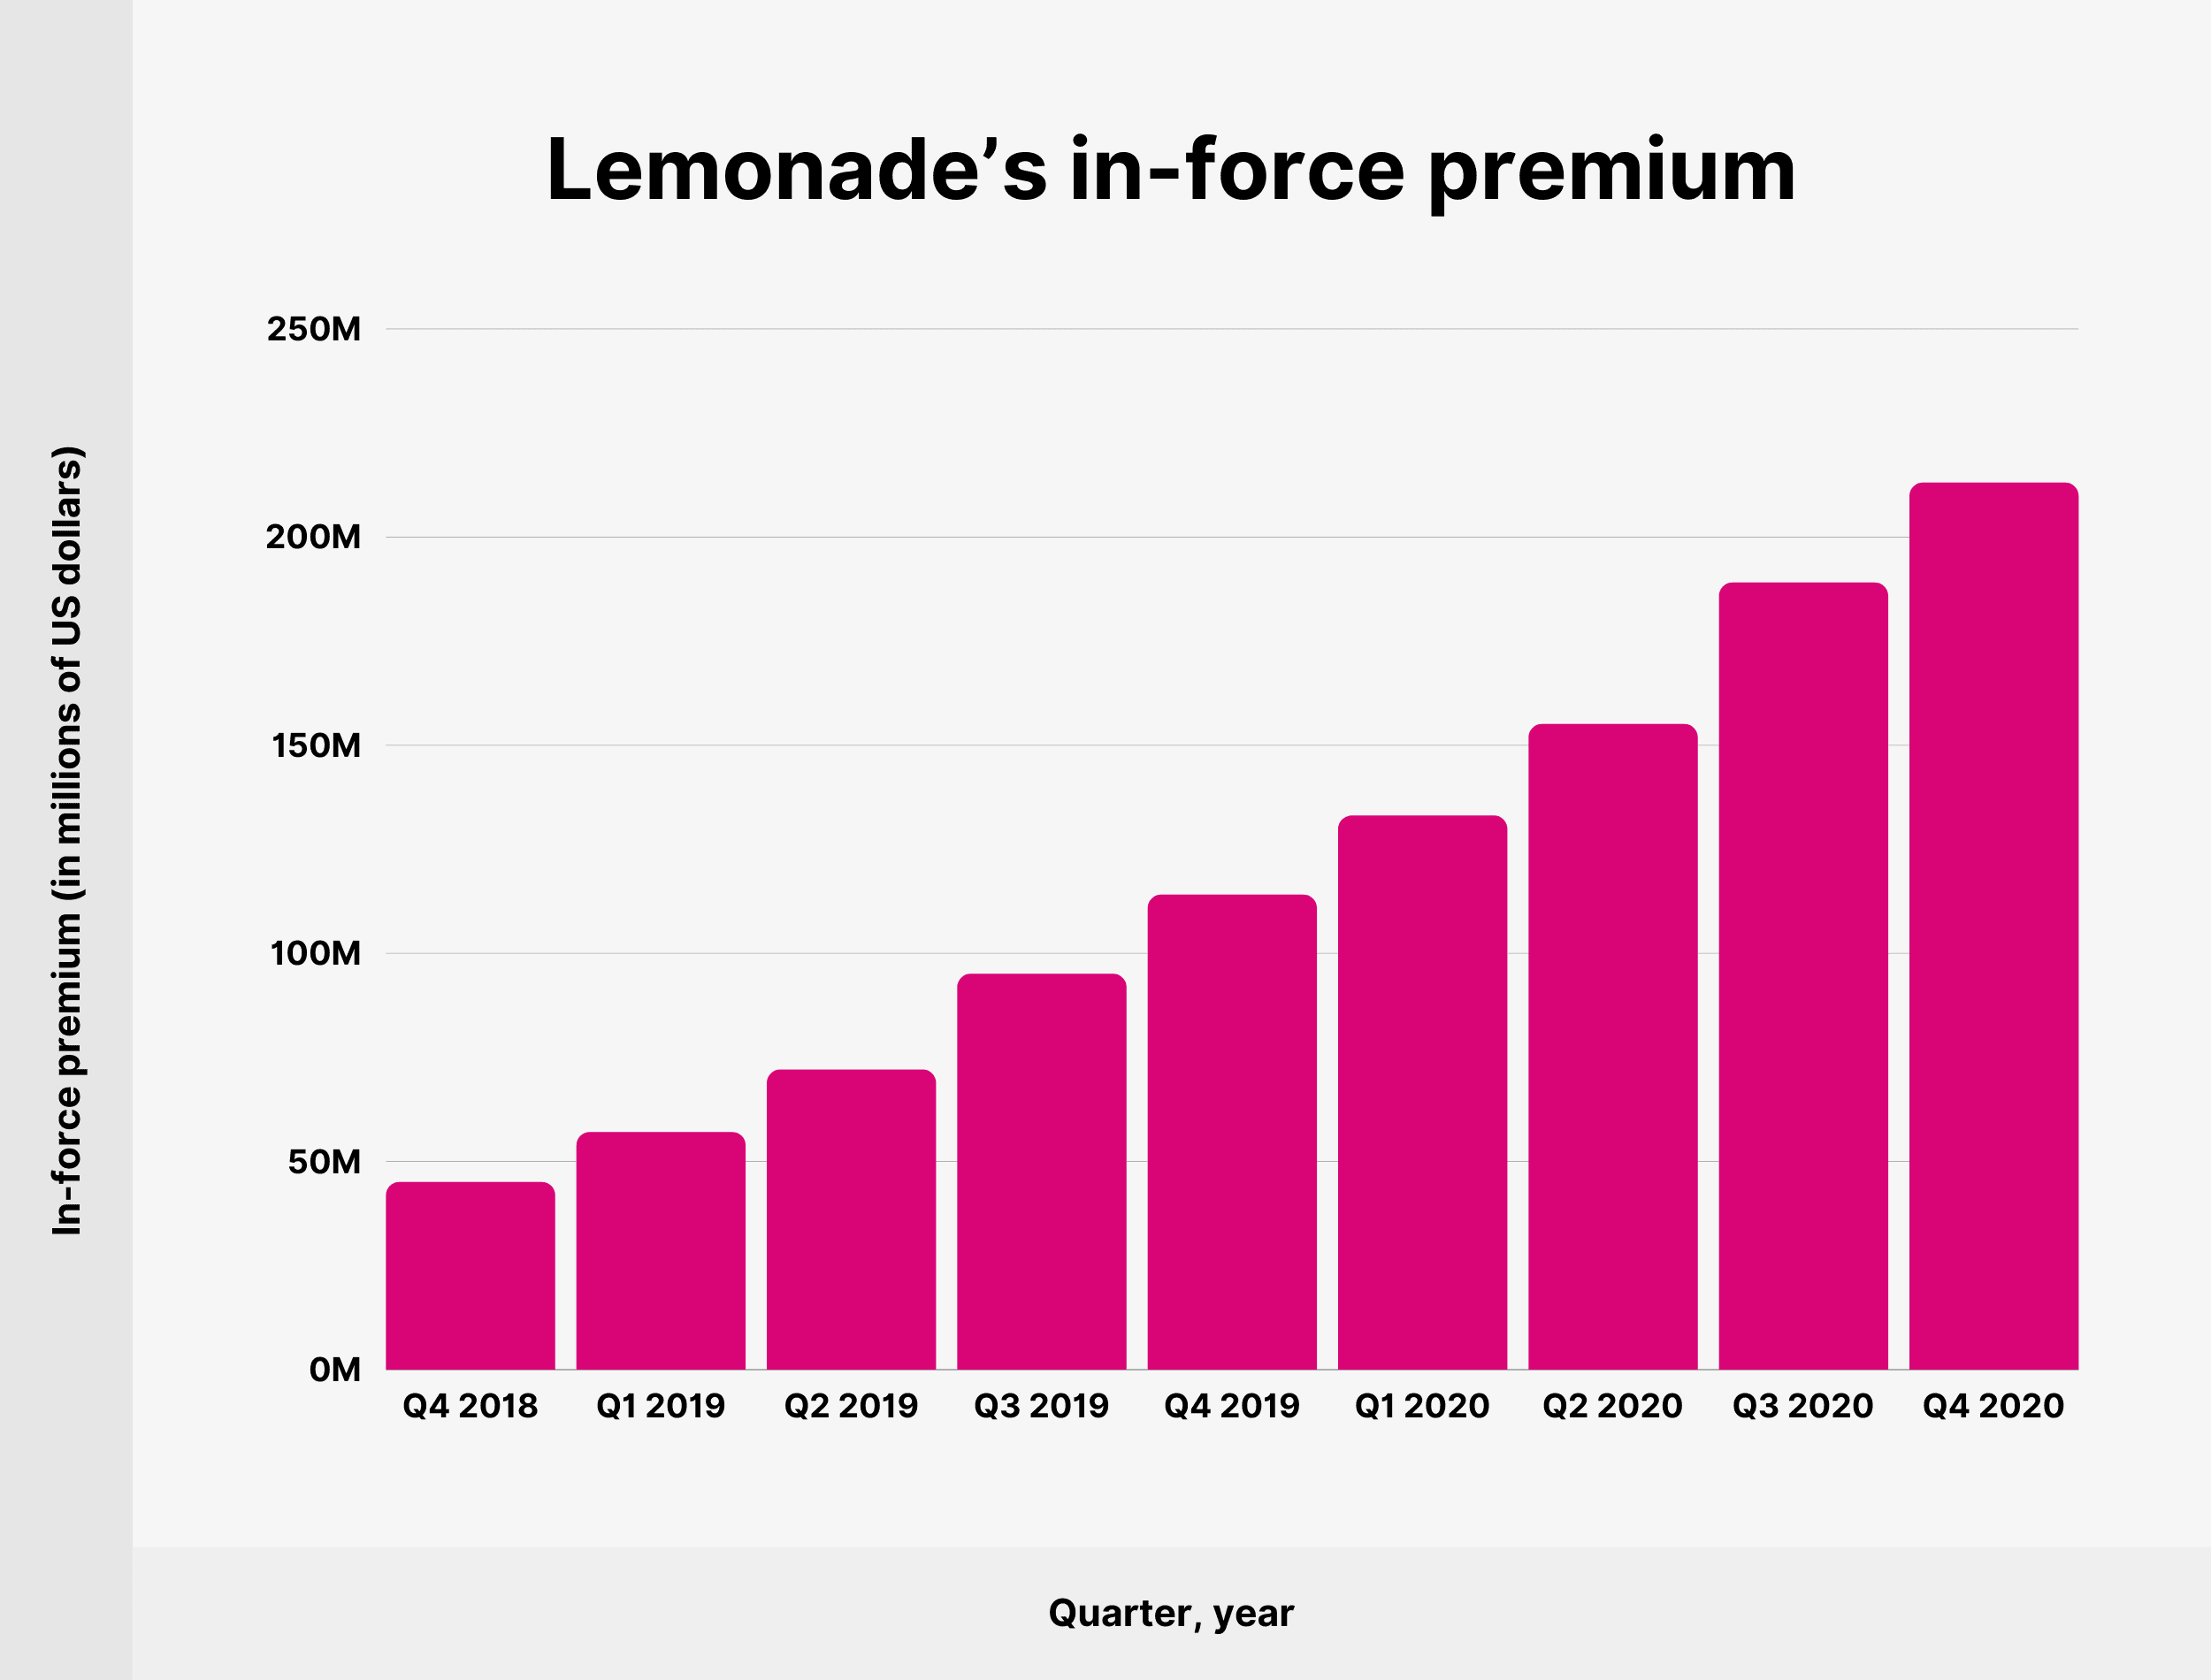 Lemonade’s in-force premium